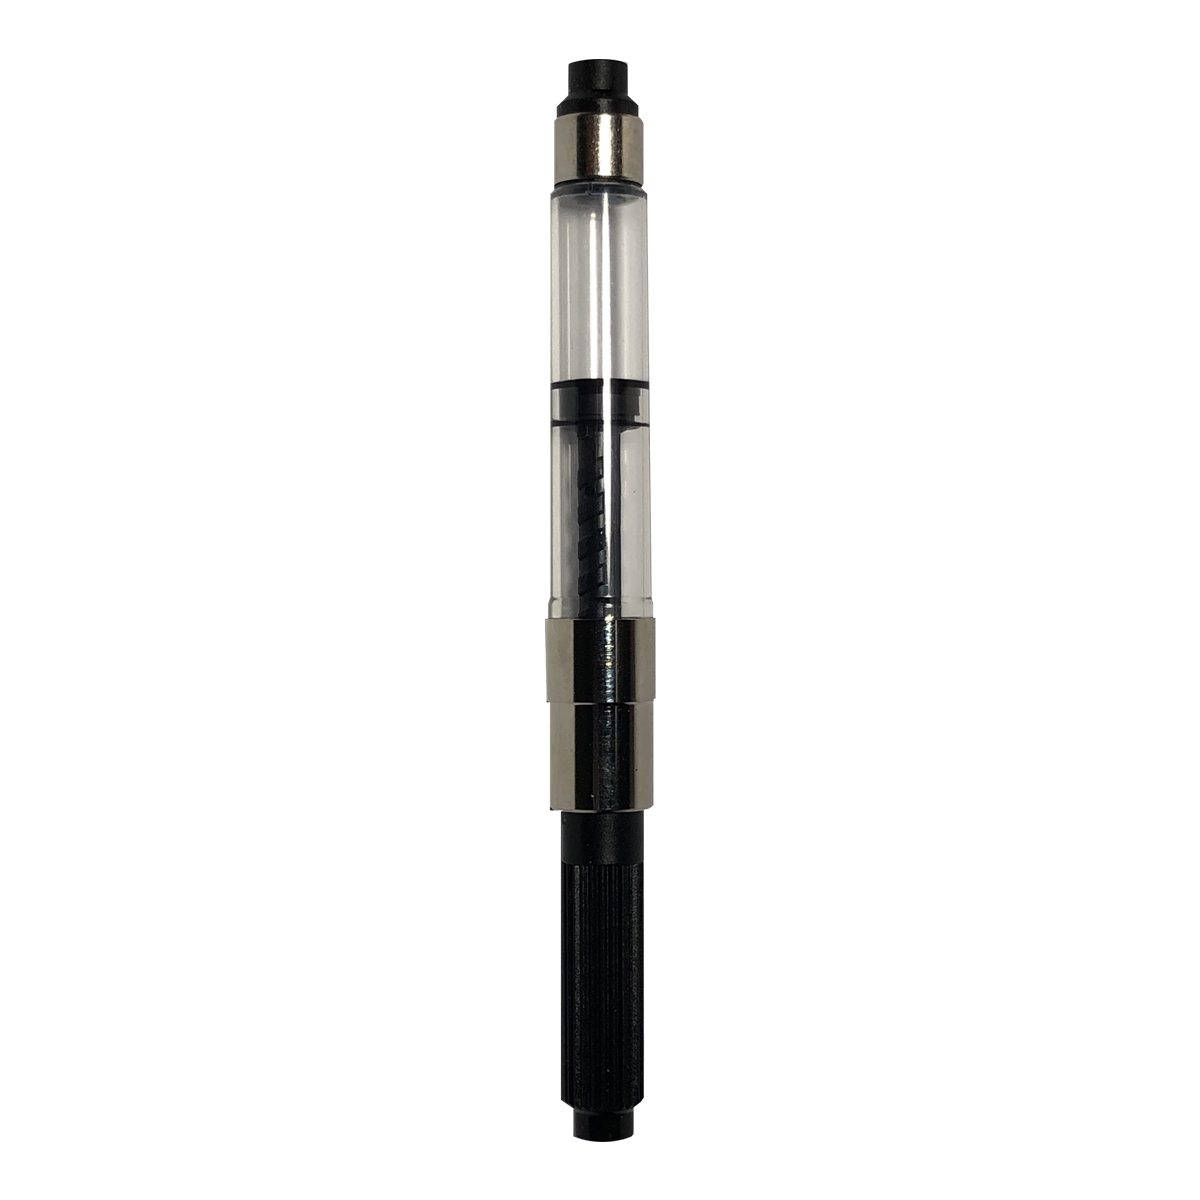 Schmidt K5 Nickel Plated Universal Size Fountain Ink Pen Converter